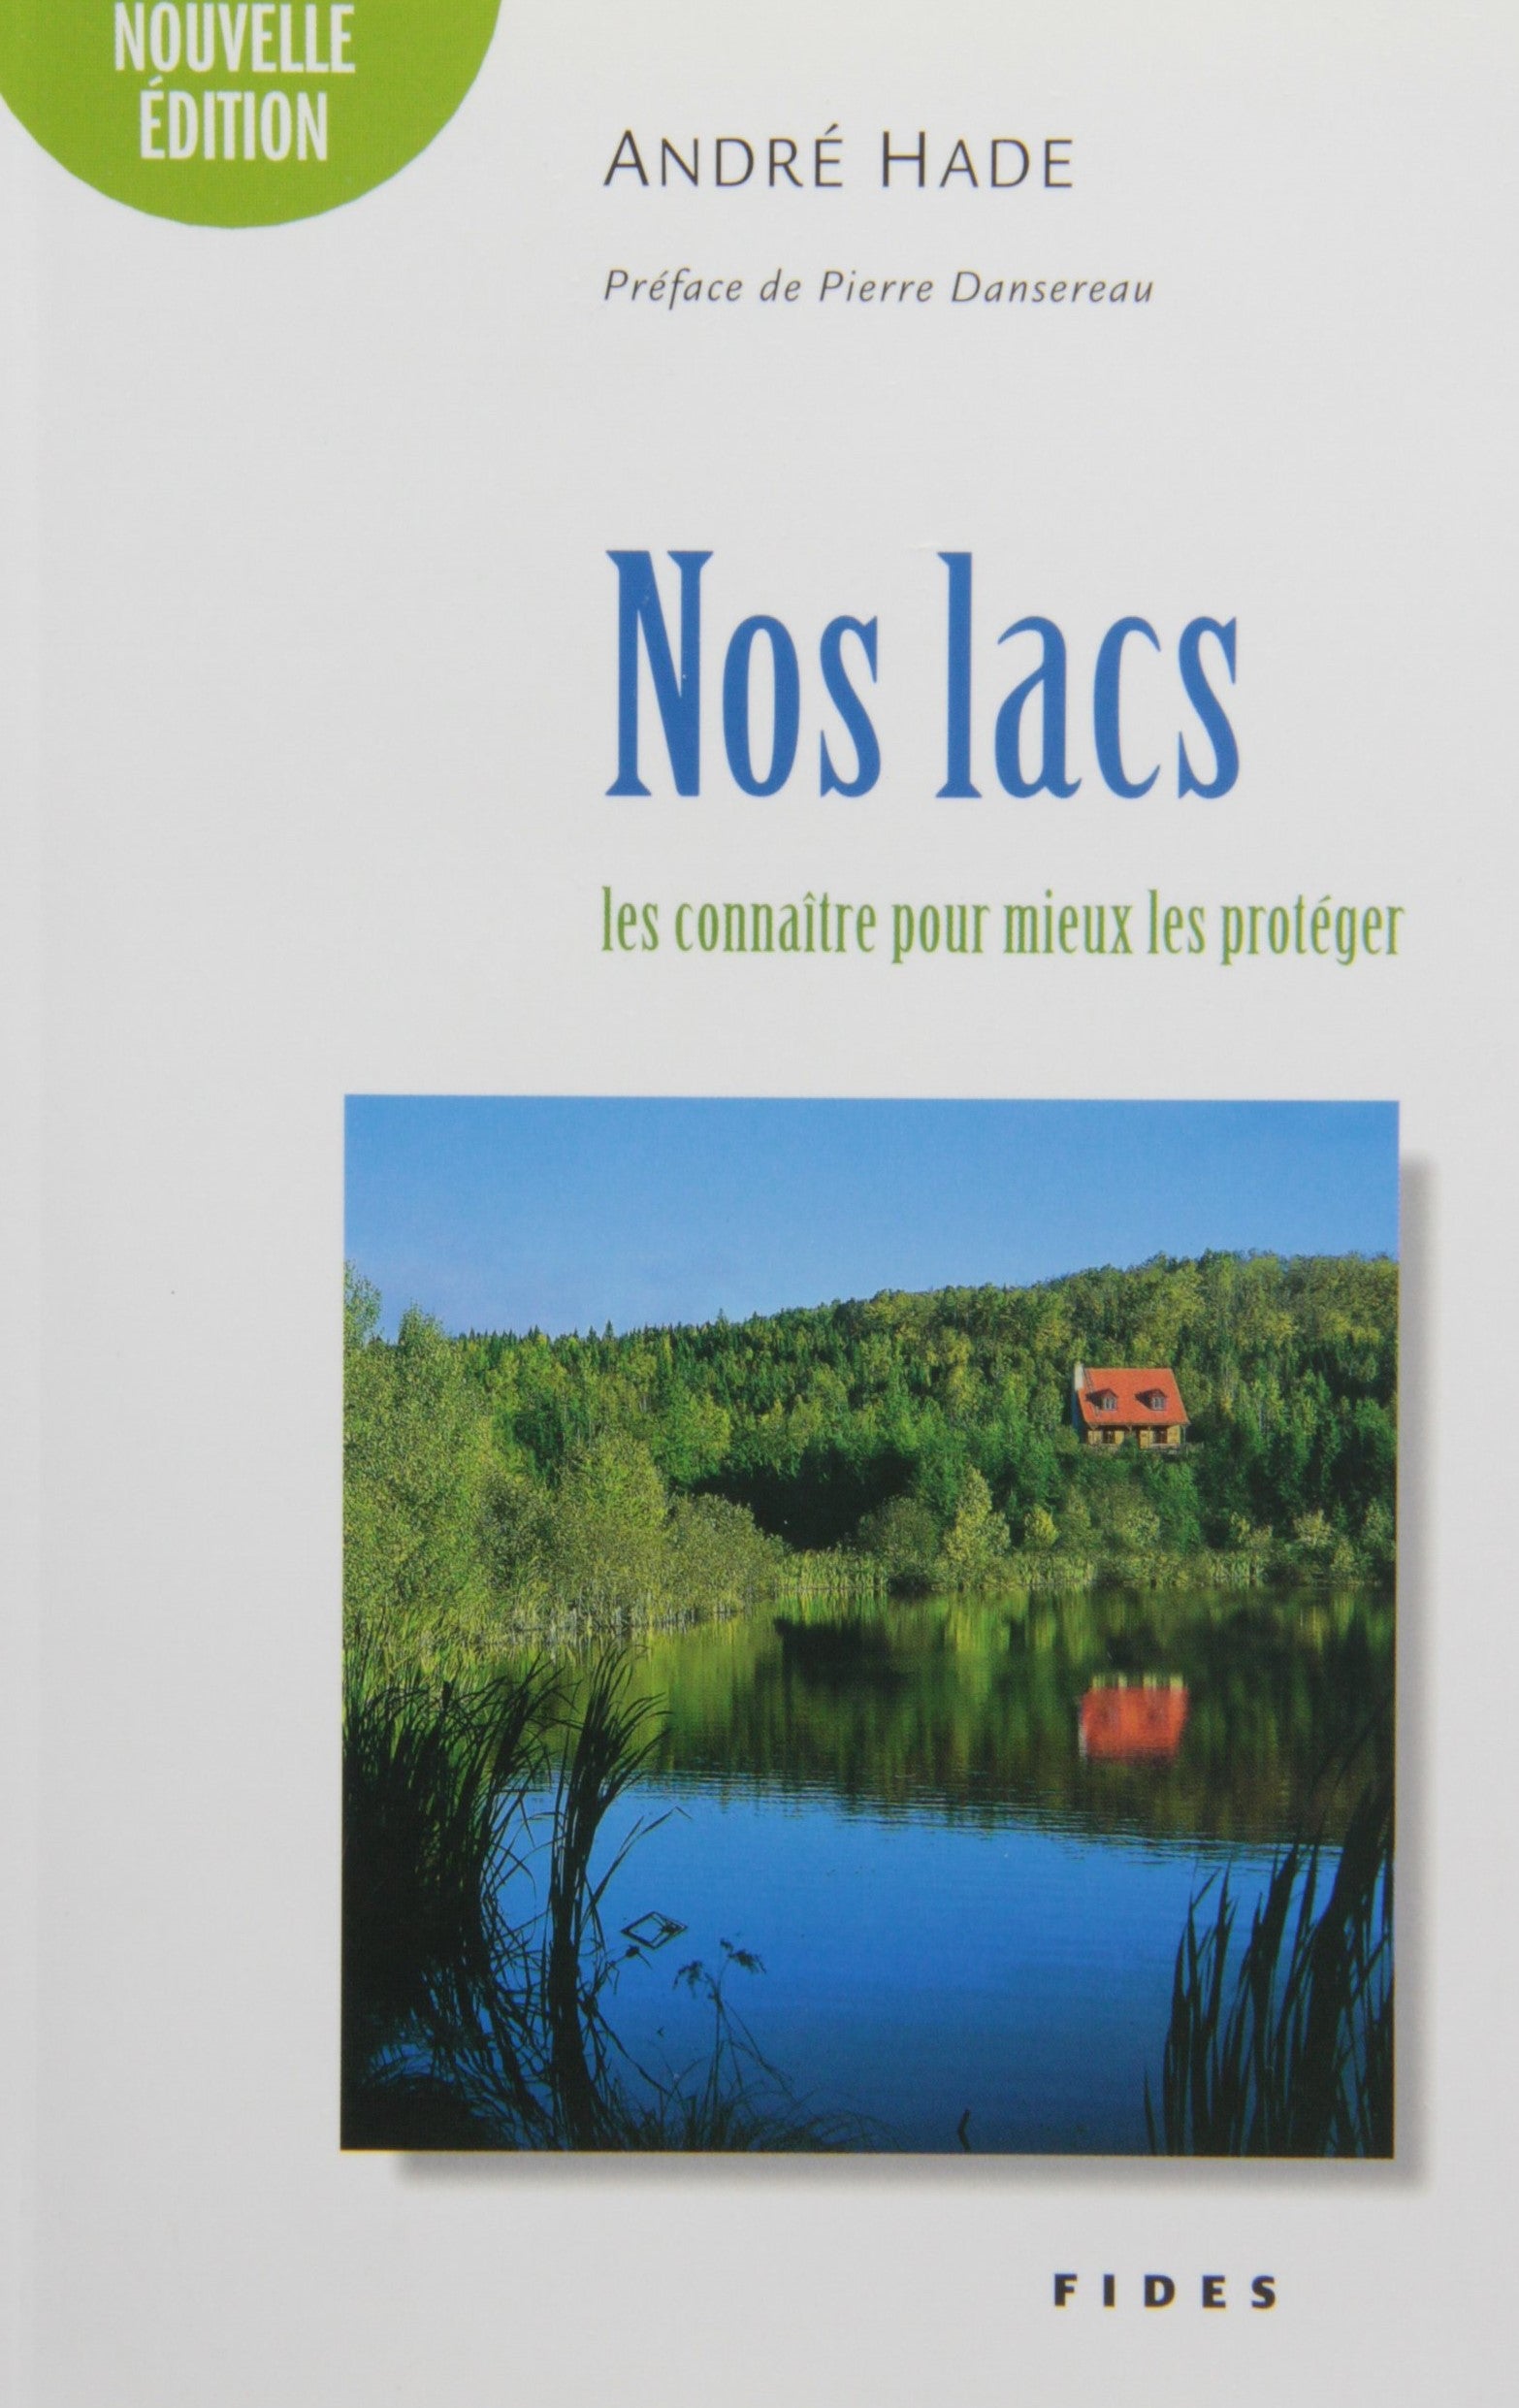 Livre ISBN 2762125340 Nos lacs : Les connaître pour mieux les protéger (André Hade)